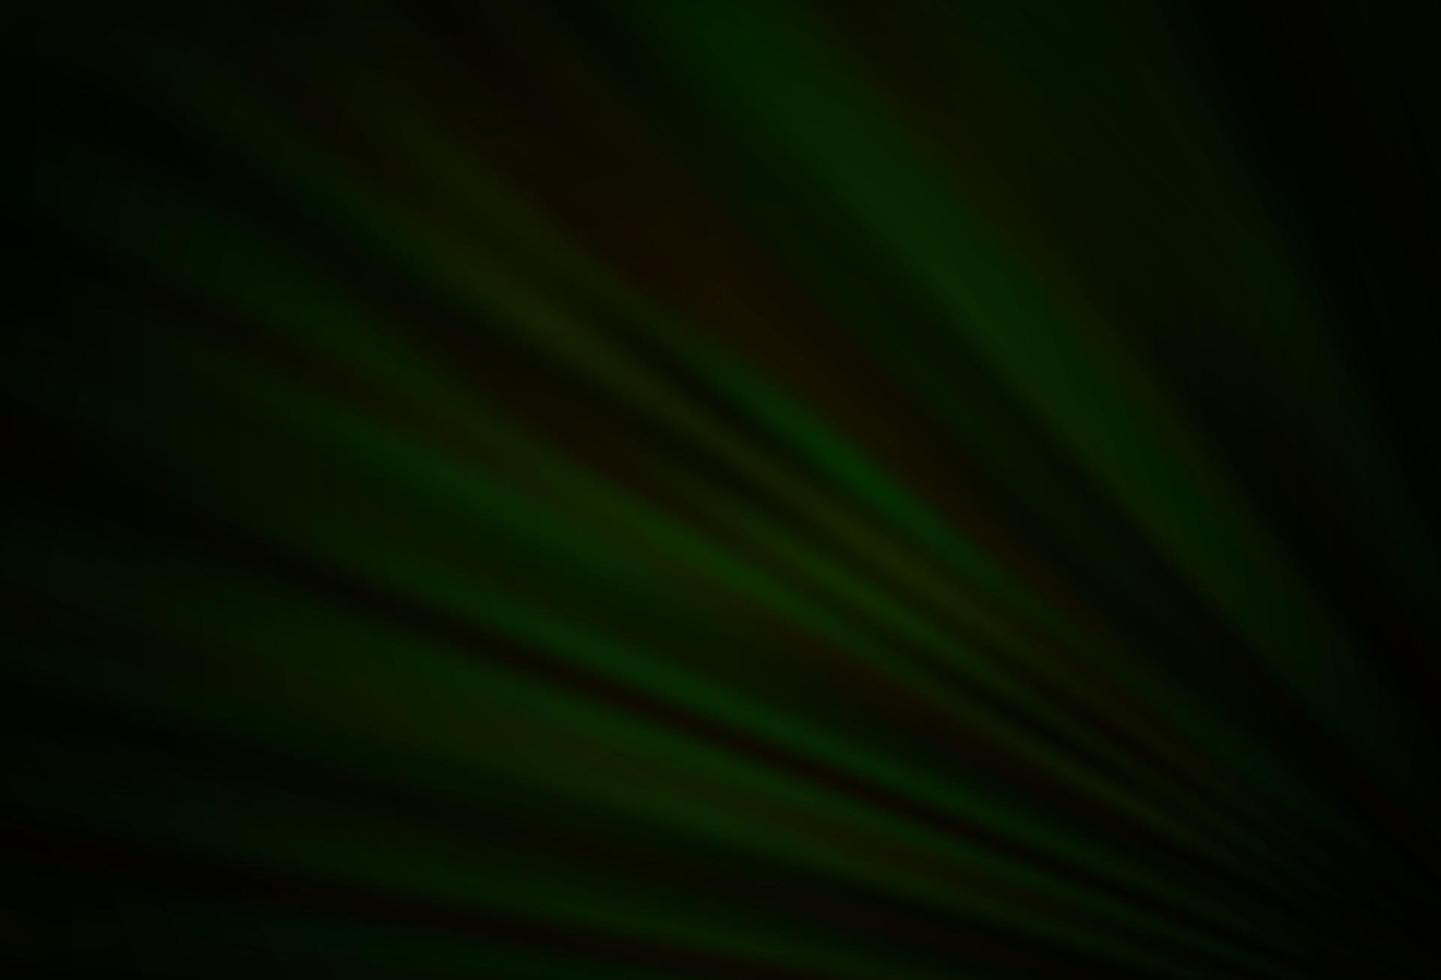 Fondo de vector verde oscuro con líneas rectas.